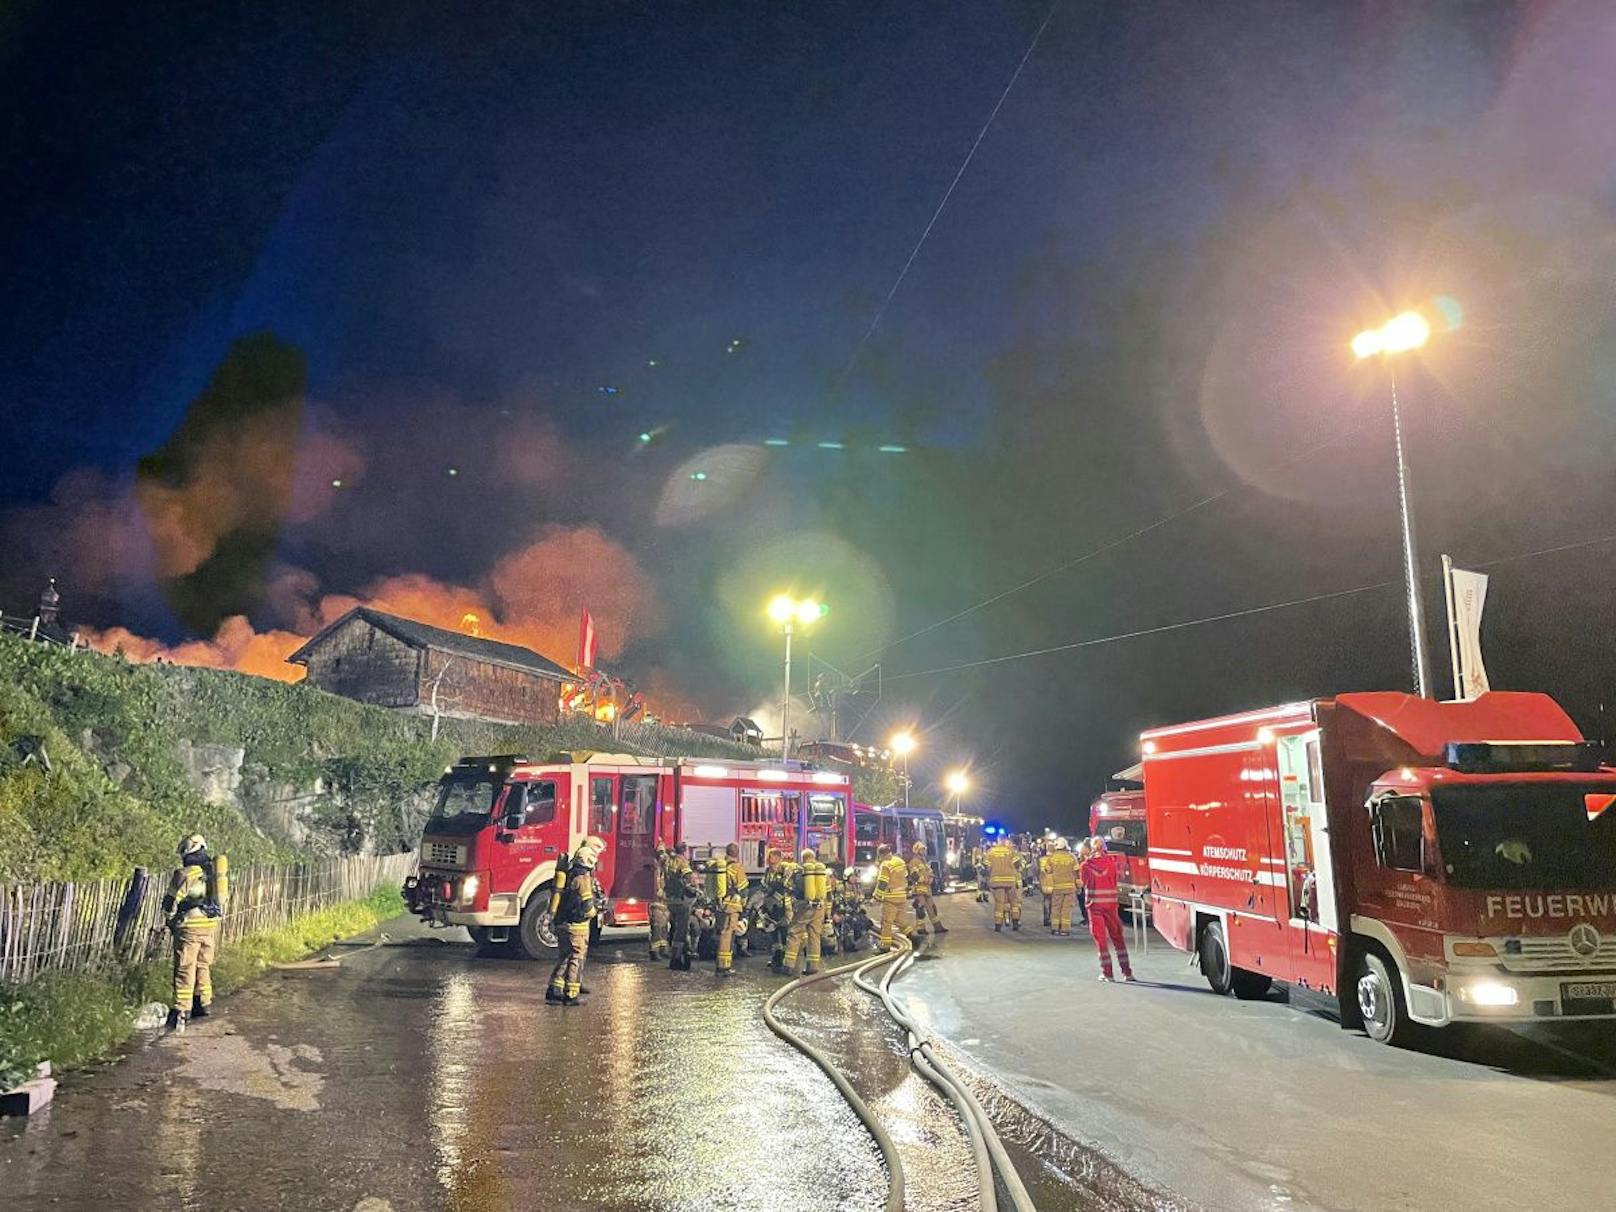 Großeinsatz in Kaprun! Eine Almhütte ging in Flammen auf – mehrere Personen wurden verletzt, darunter auch ein Feuerwehrmann.